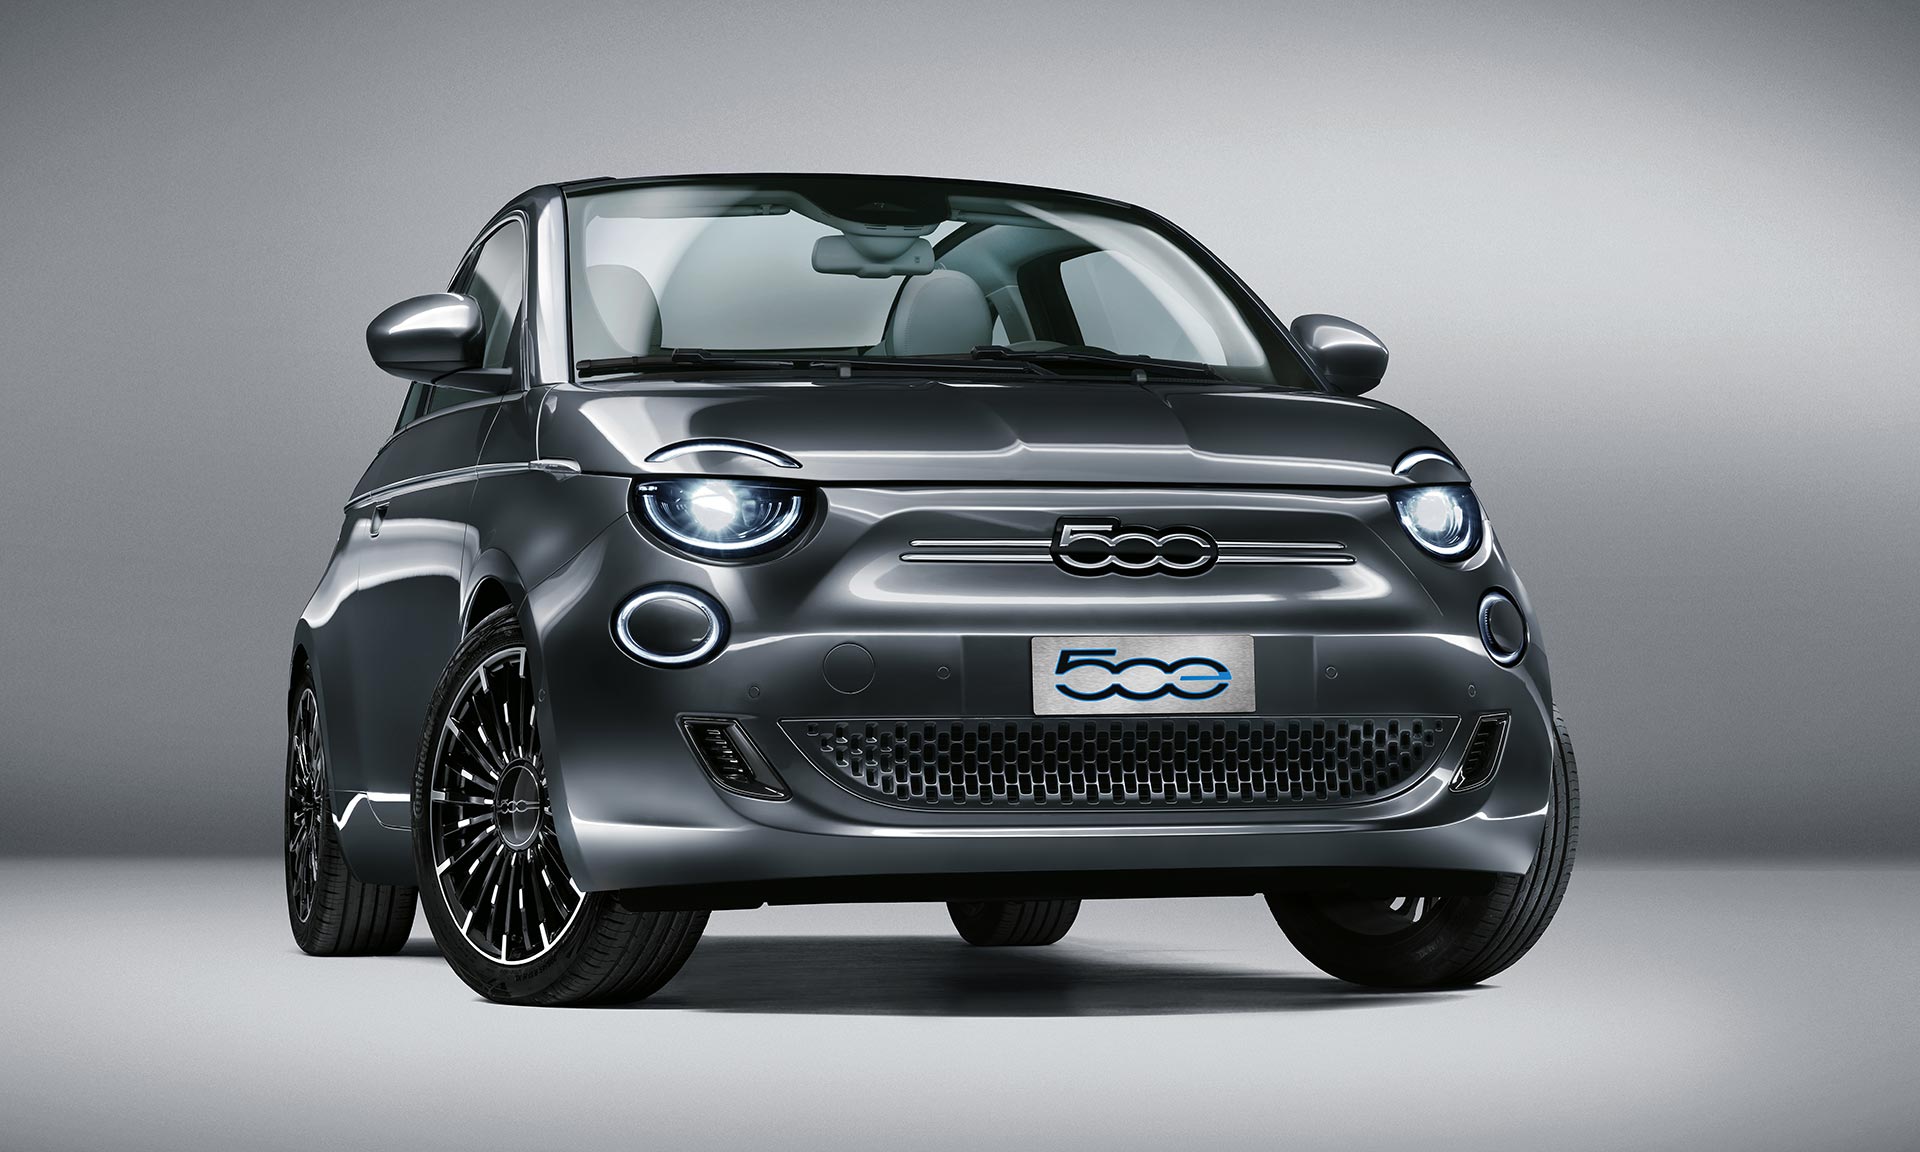 Nová generace Fiat 500 přichází v edicích slavných značek i jako elektromobil